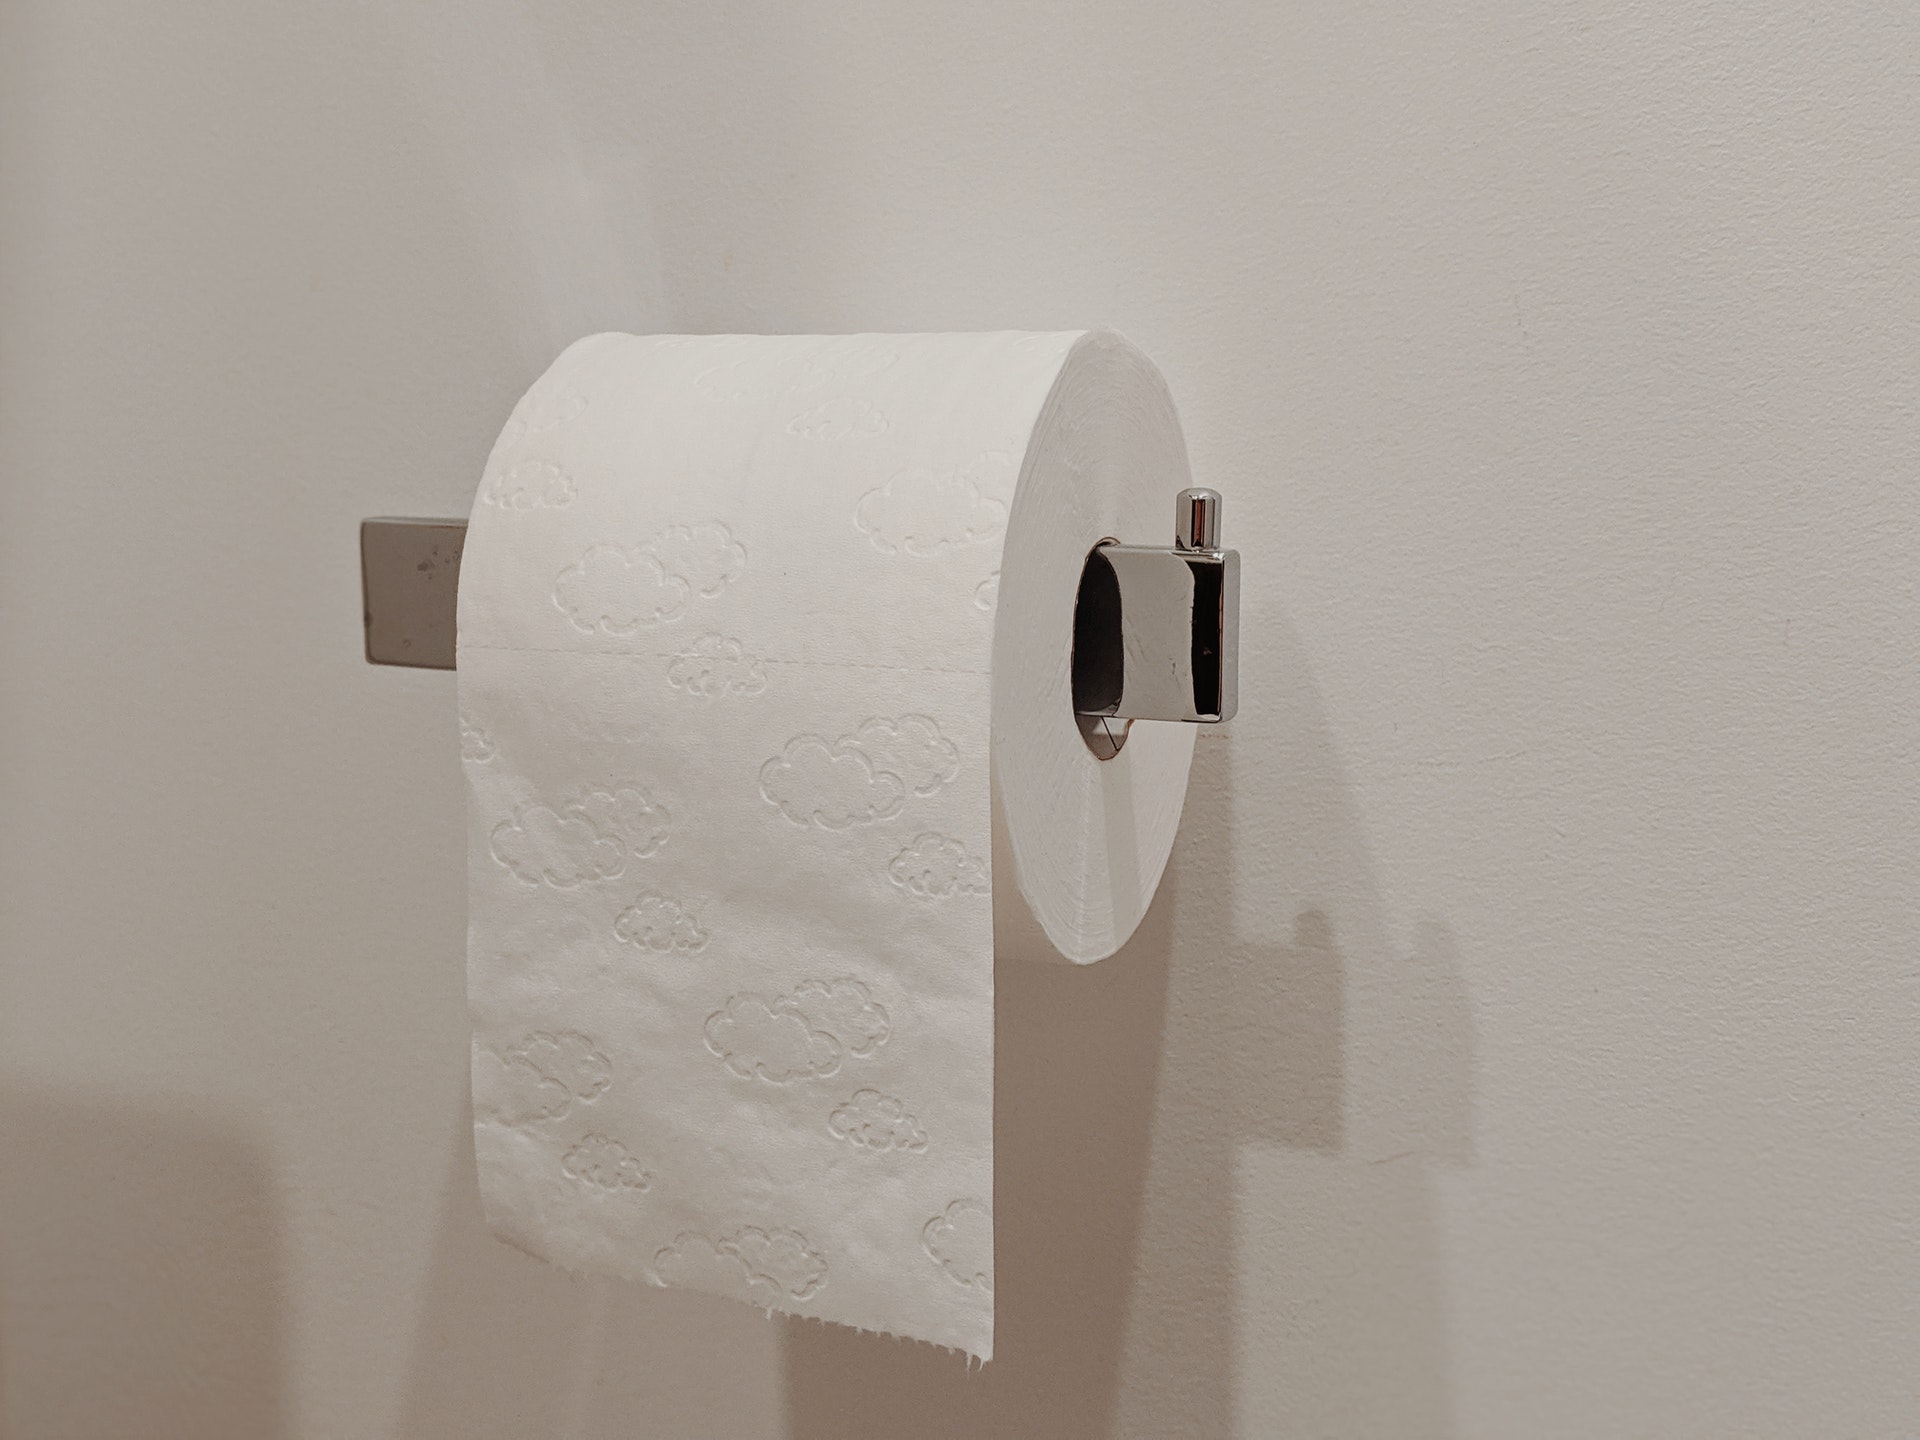 Voordelen van het aanbod van de toiletpapier